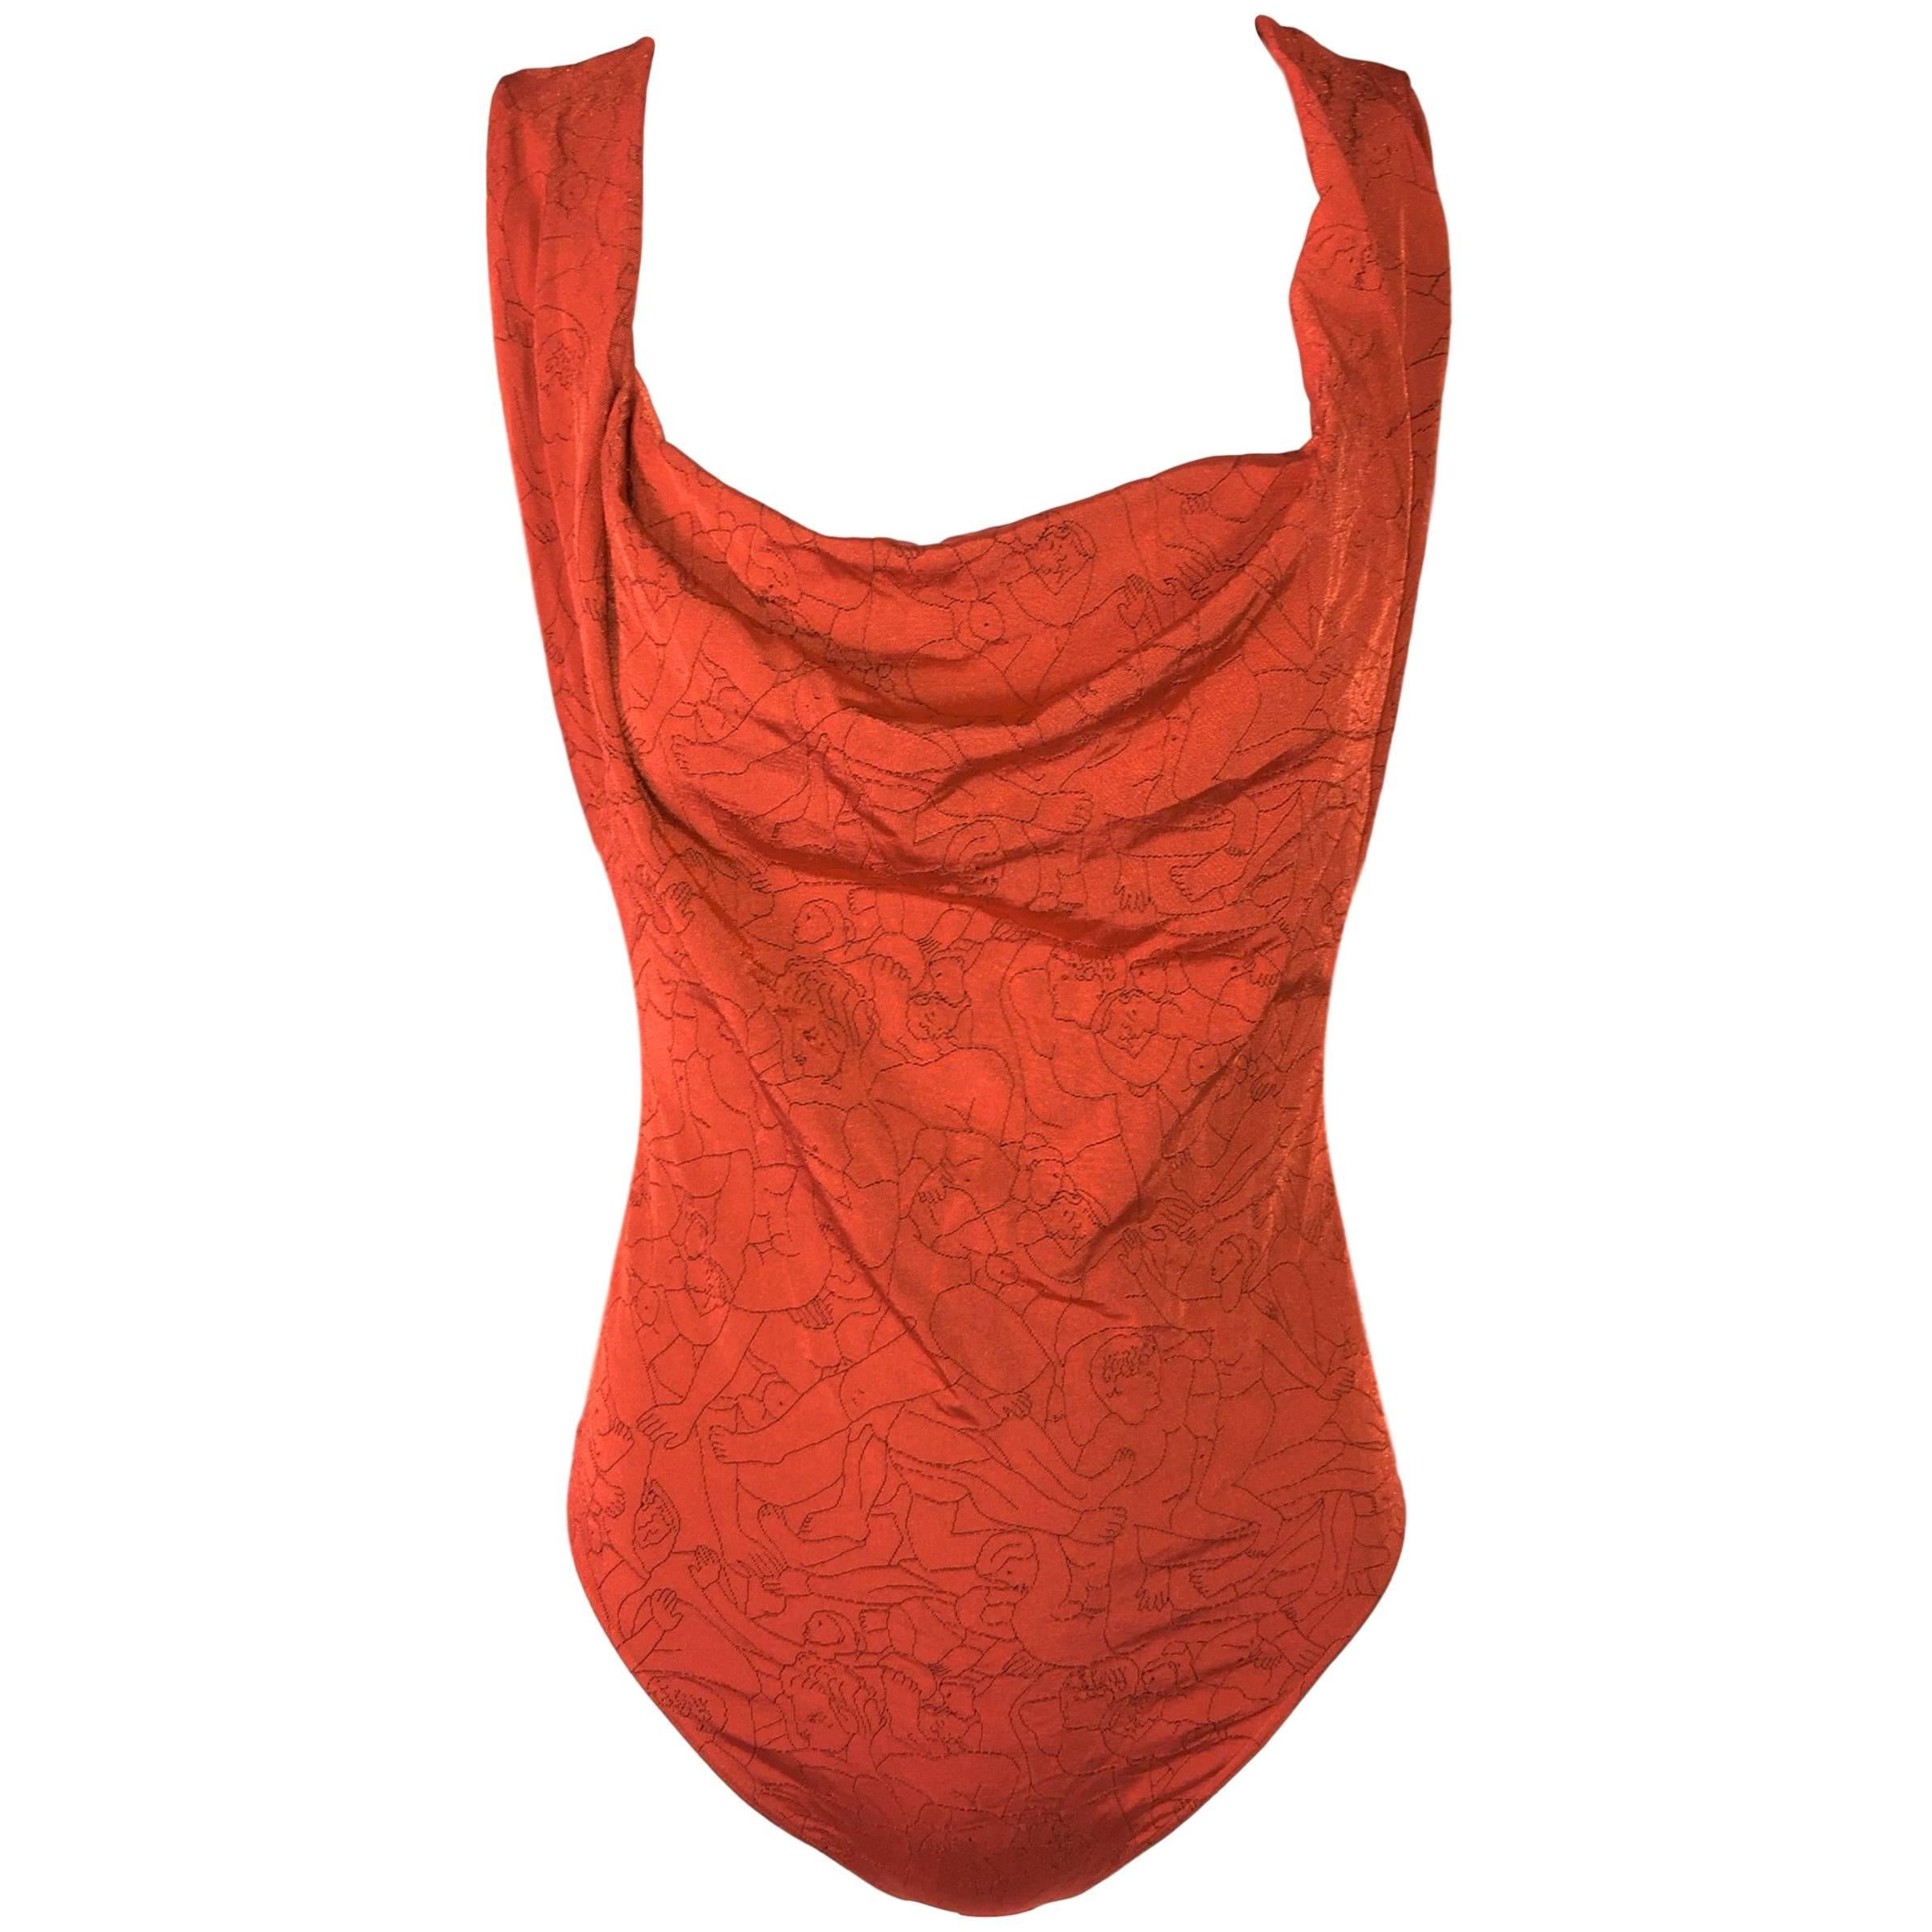 2004 Vivienne Westwood x Wolford Orgie Print Orange Bodysuit Top